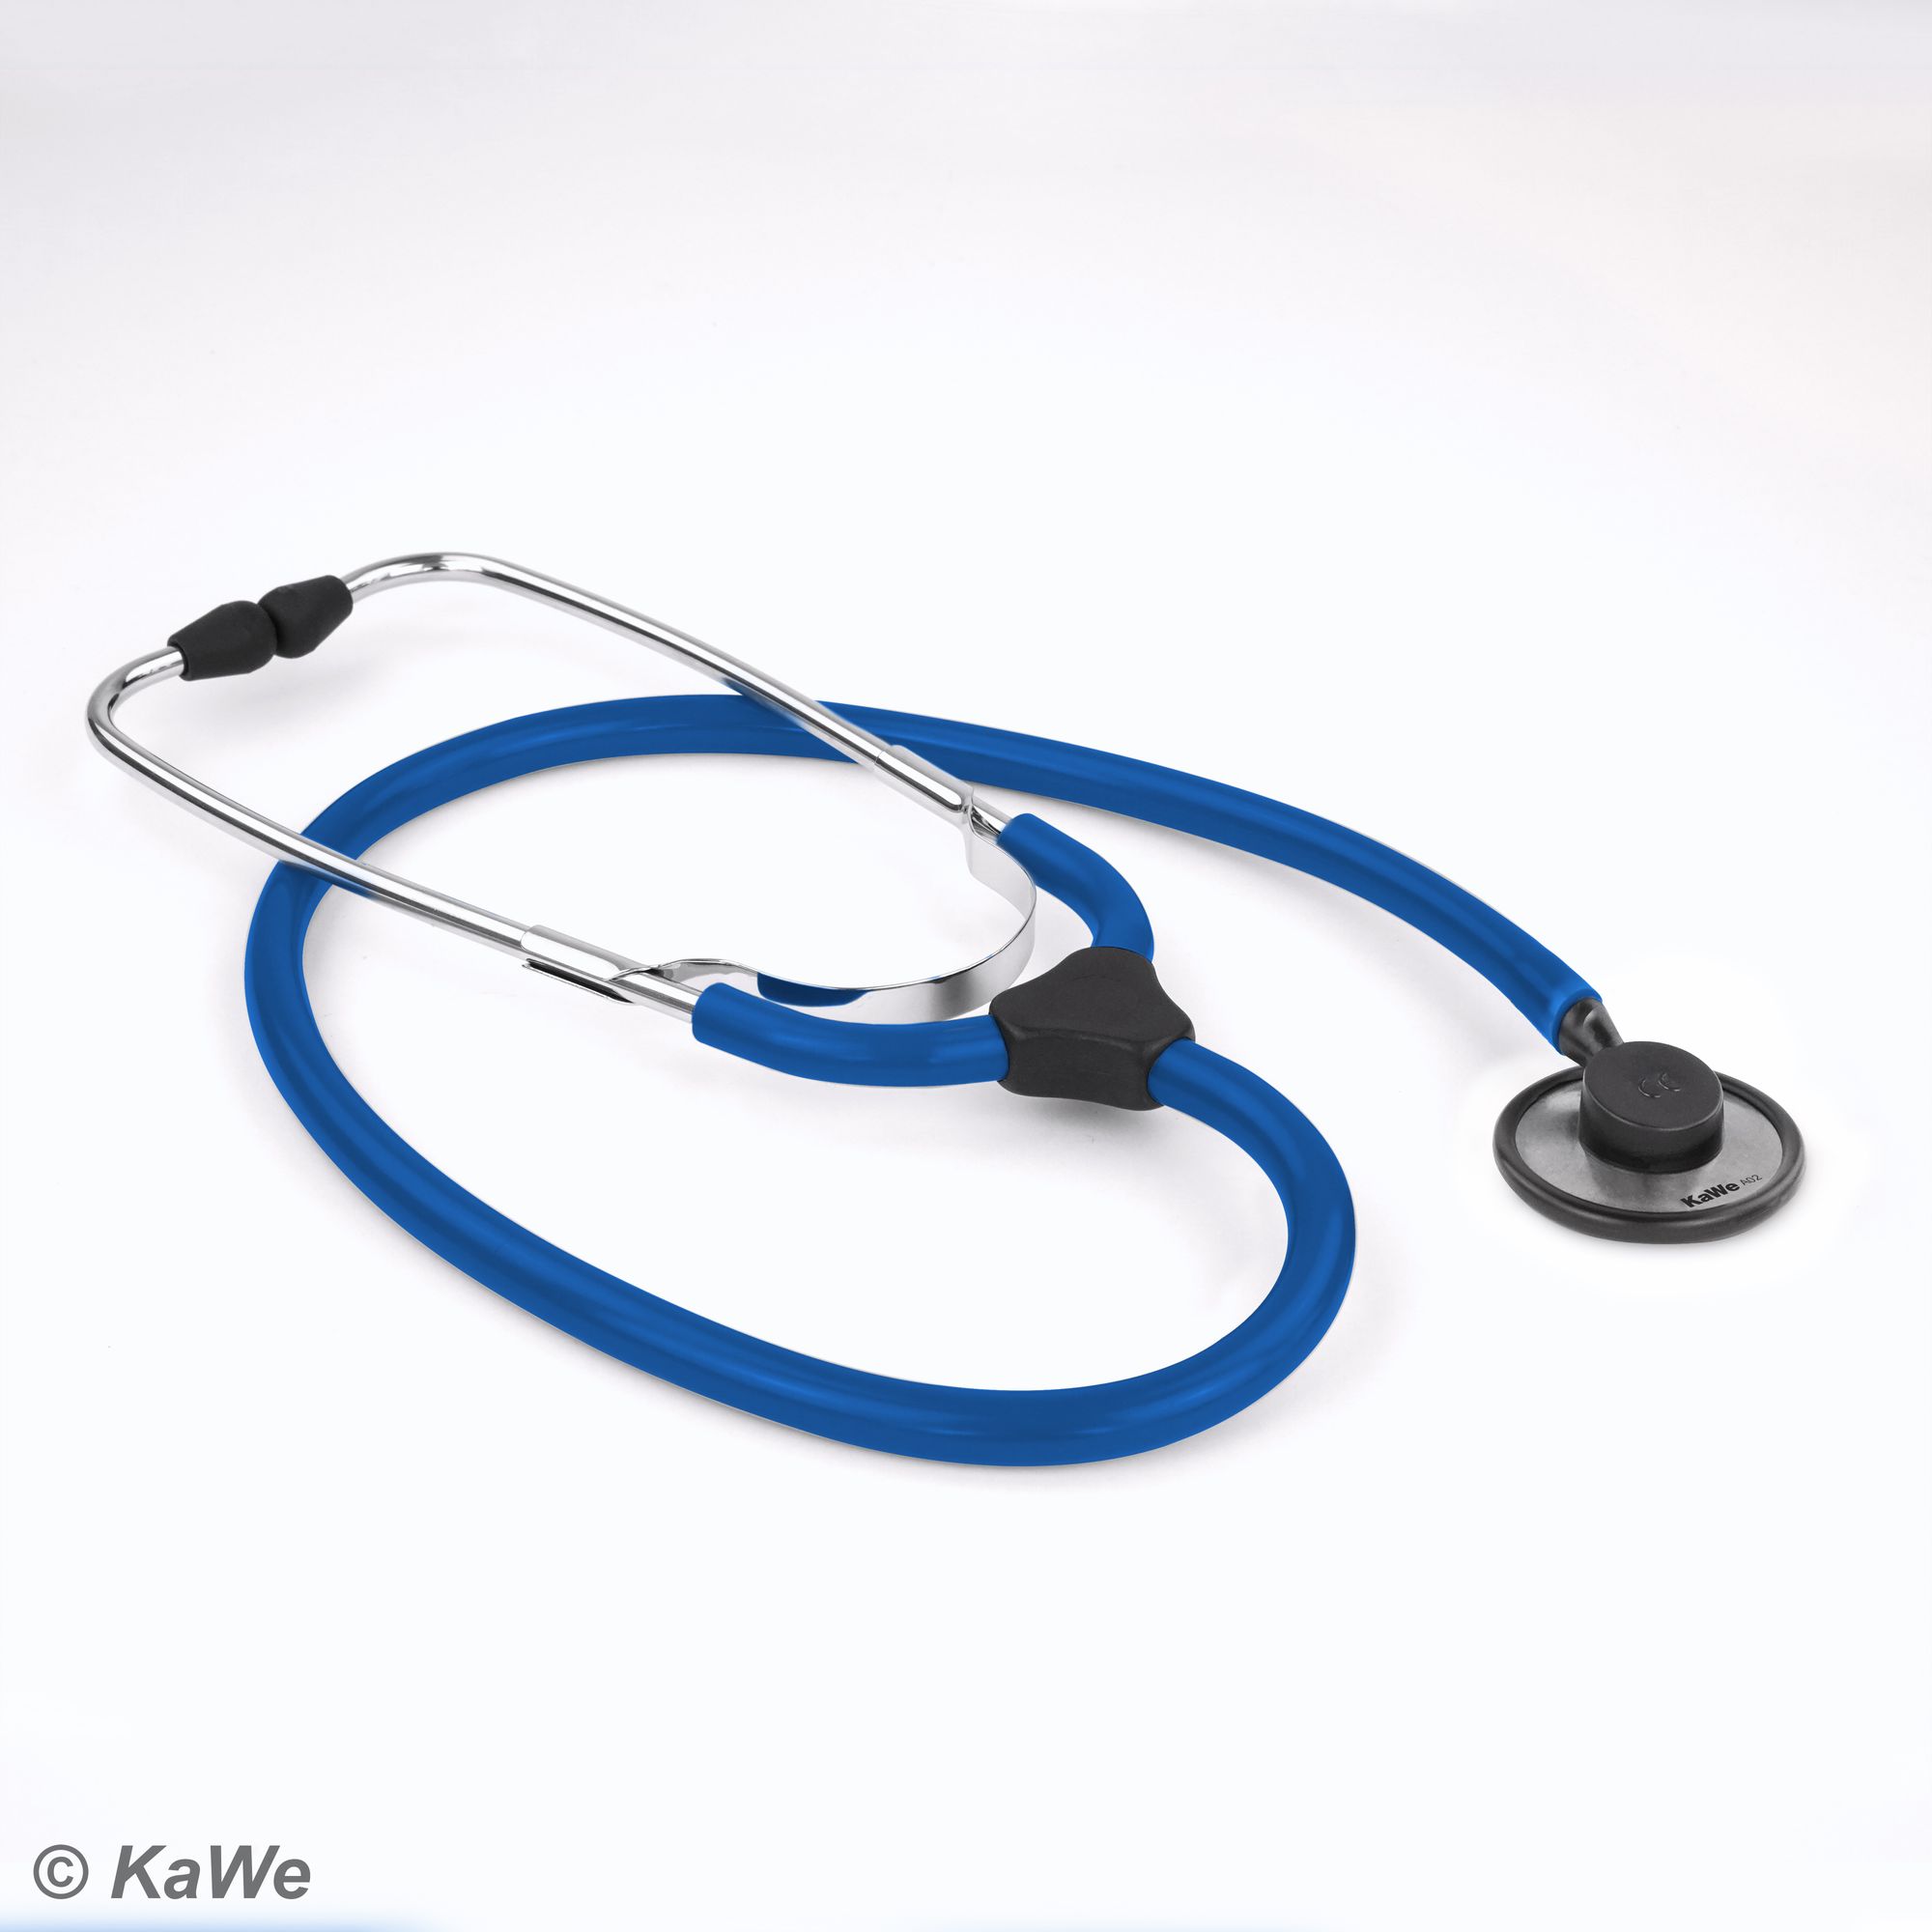 KaWe-COLORSCOP Plano Stethoskop, blau